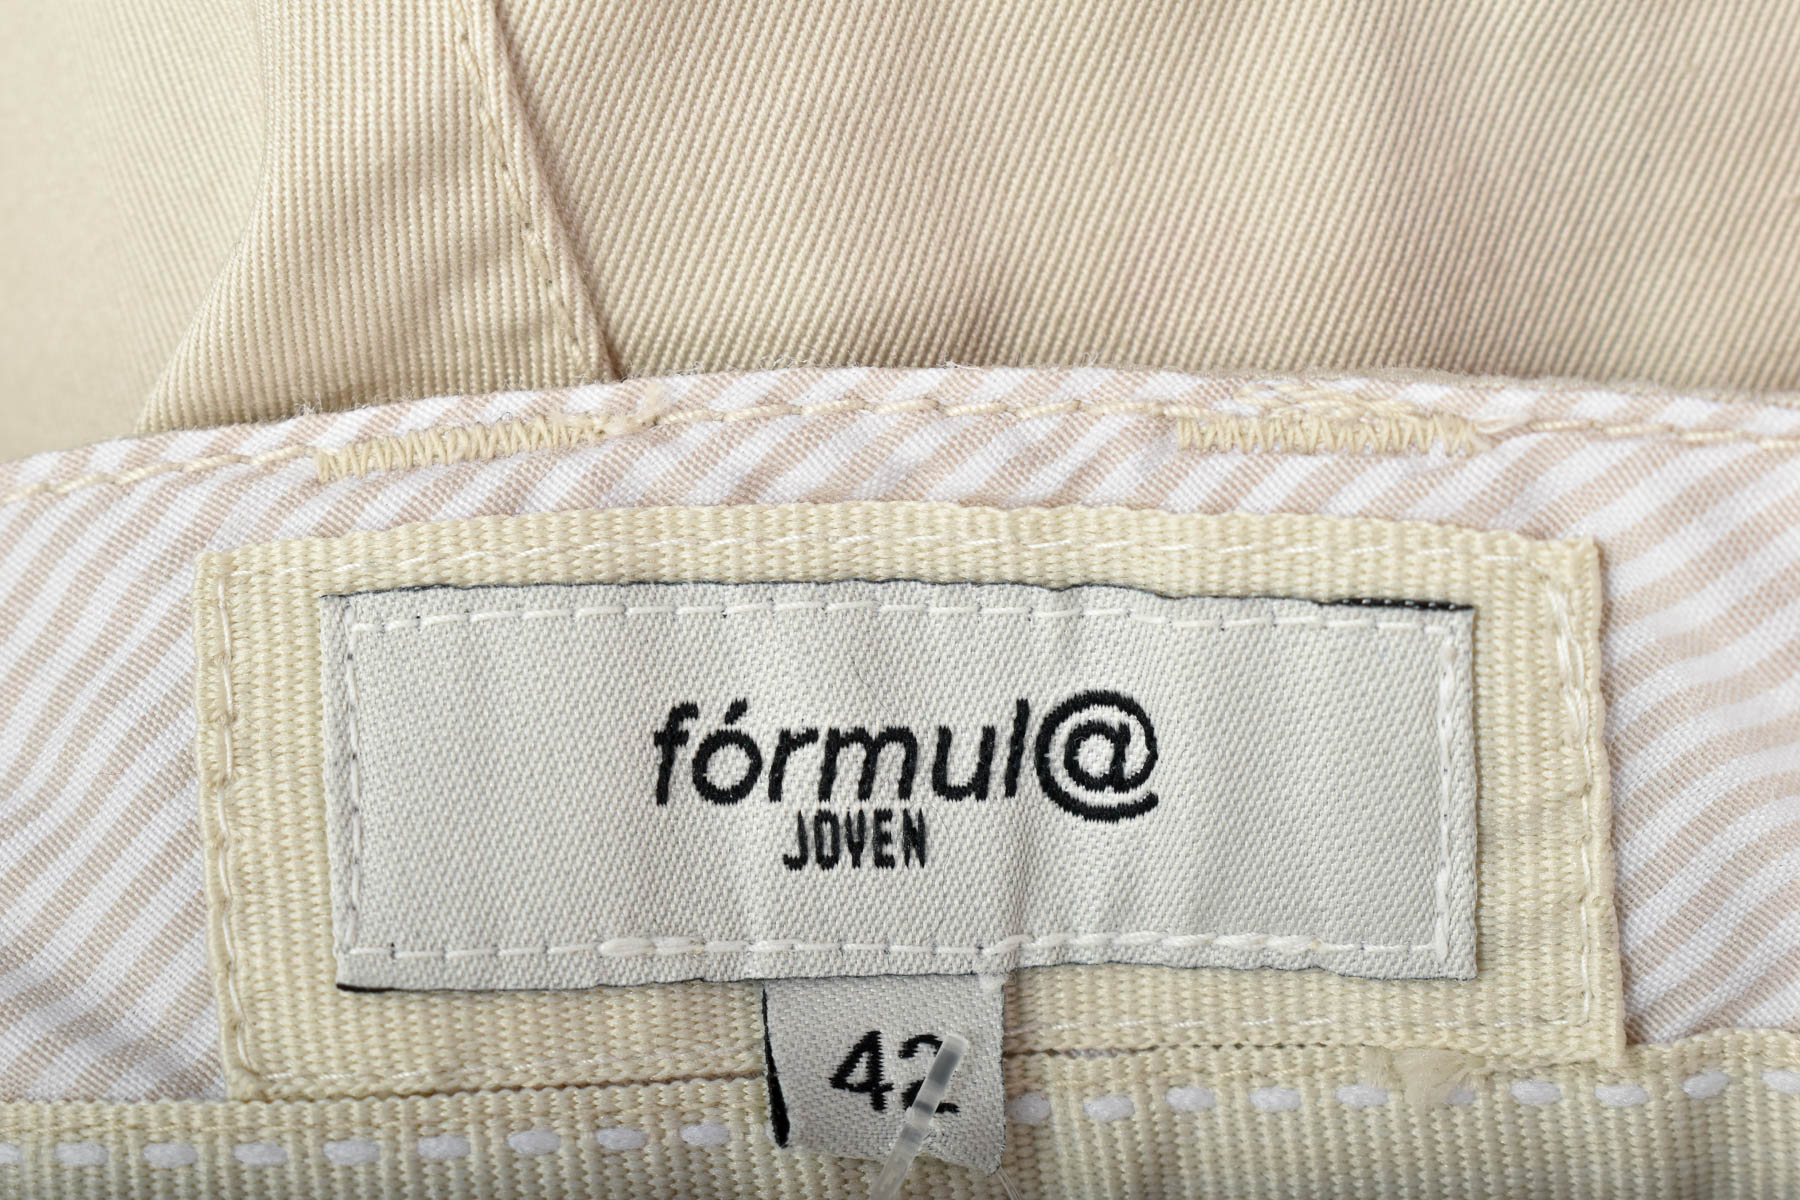 Female shorts - Fórmula Joven - 2